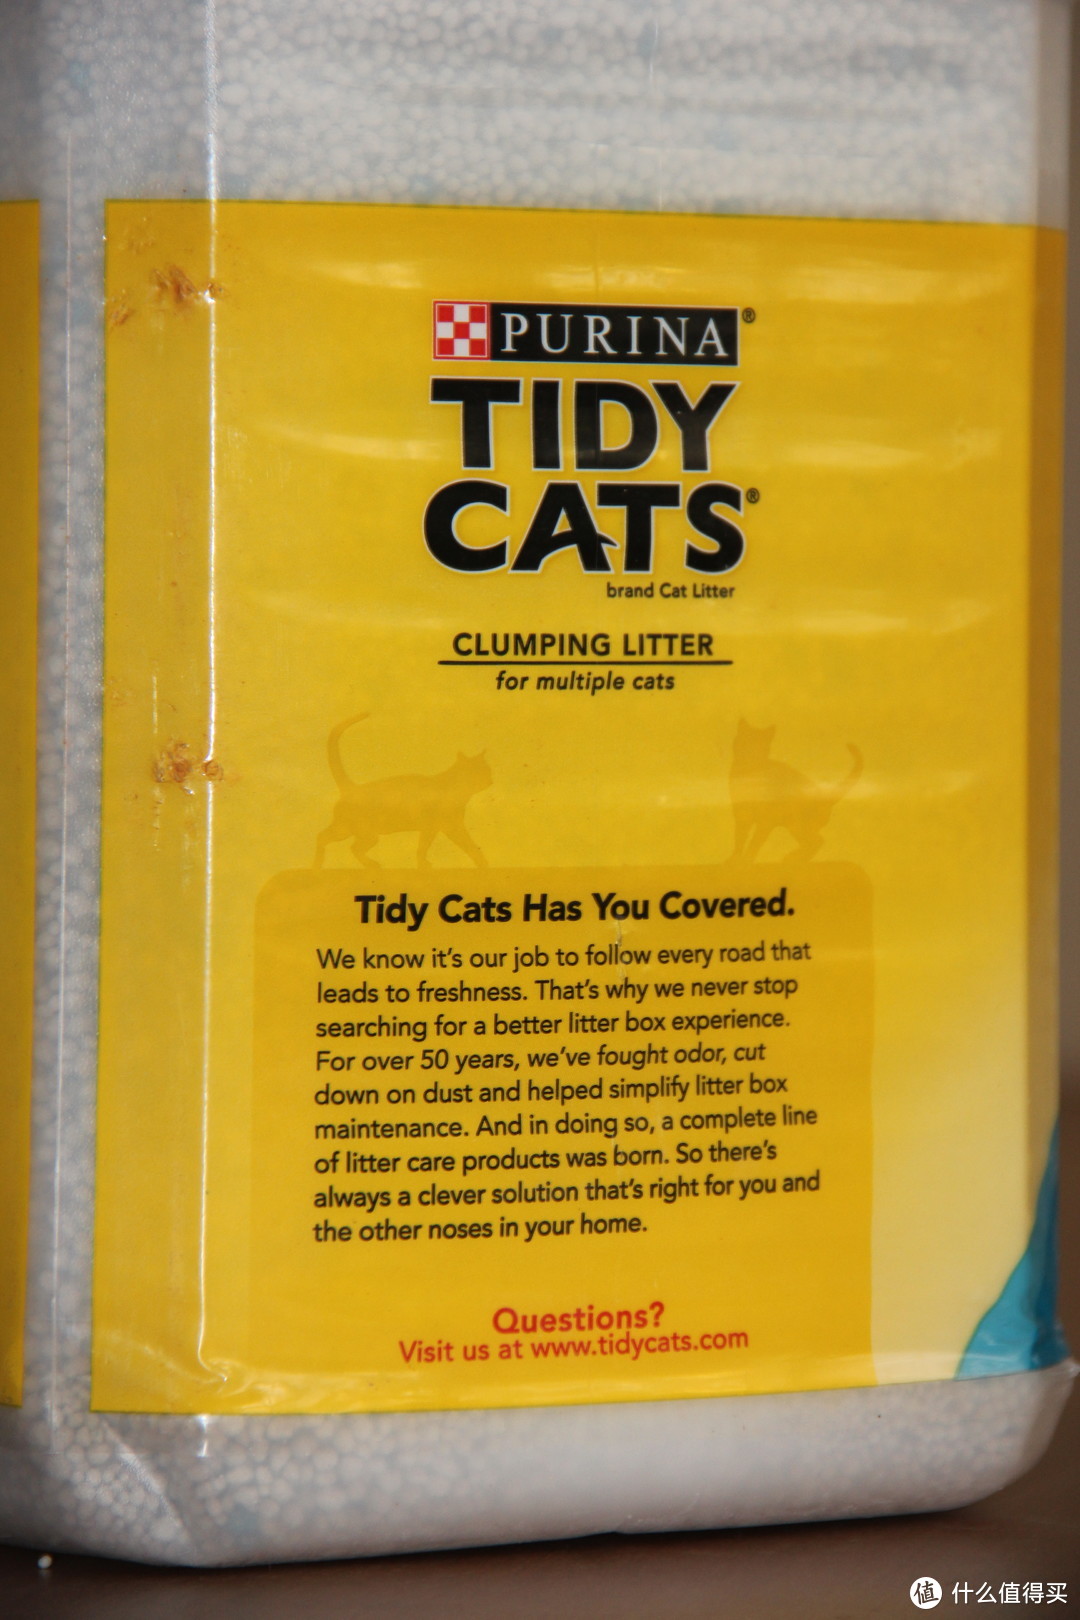 雀巢家的猫砂-猫咪主子们的新选择-普瑞纳 TIDY CATS泰迪 即效除臭型猫砂